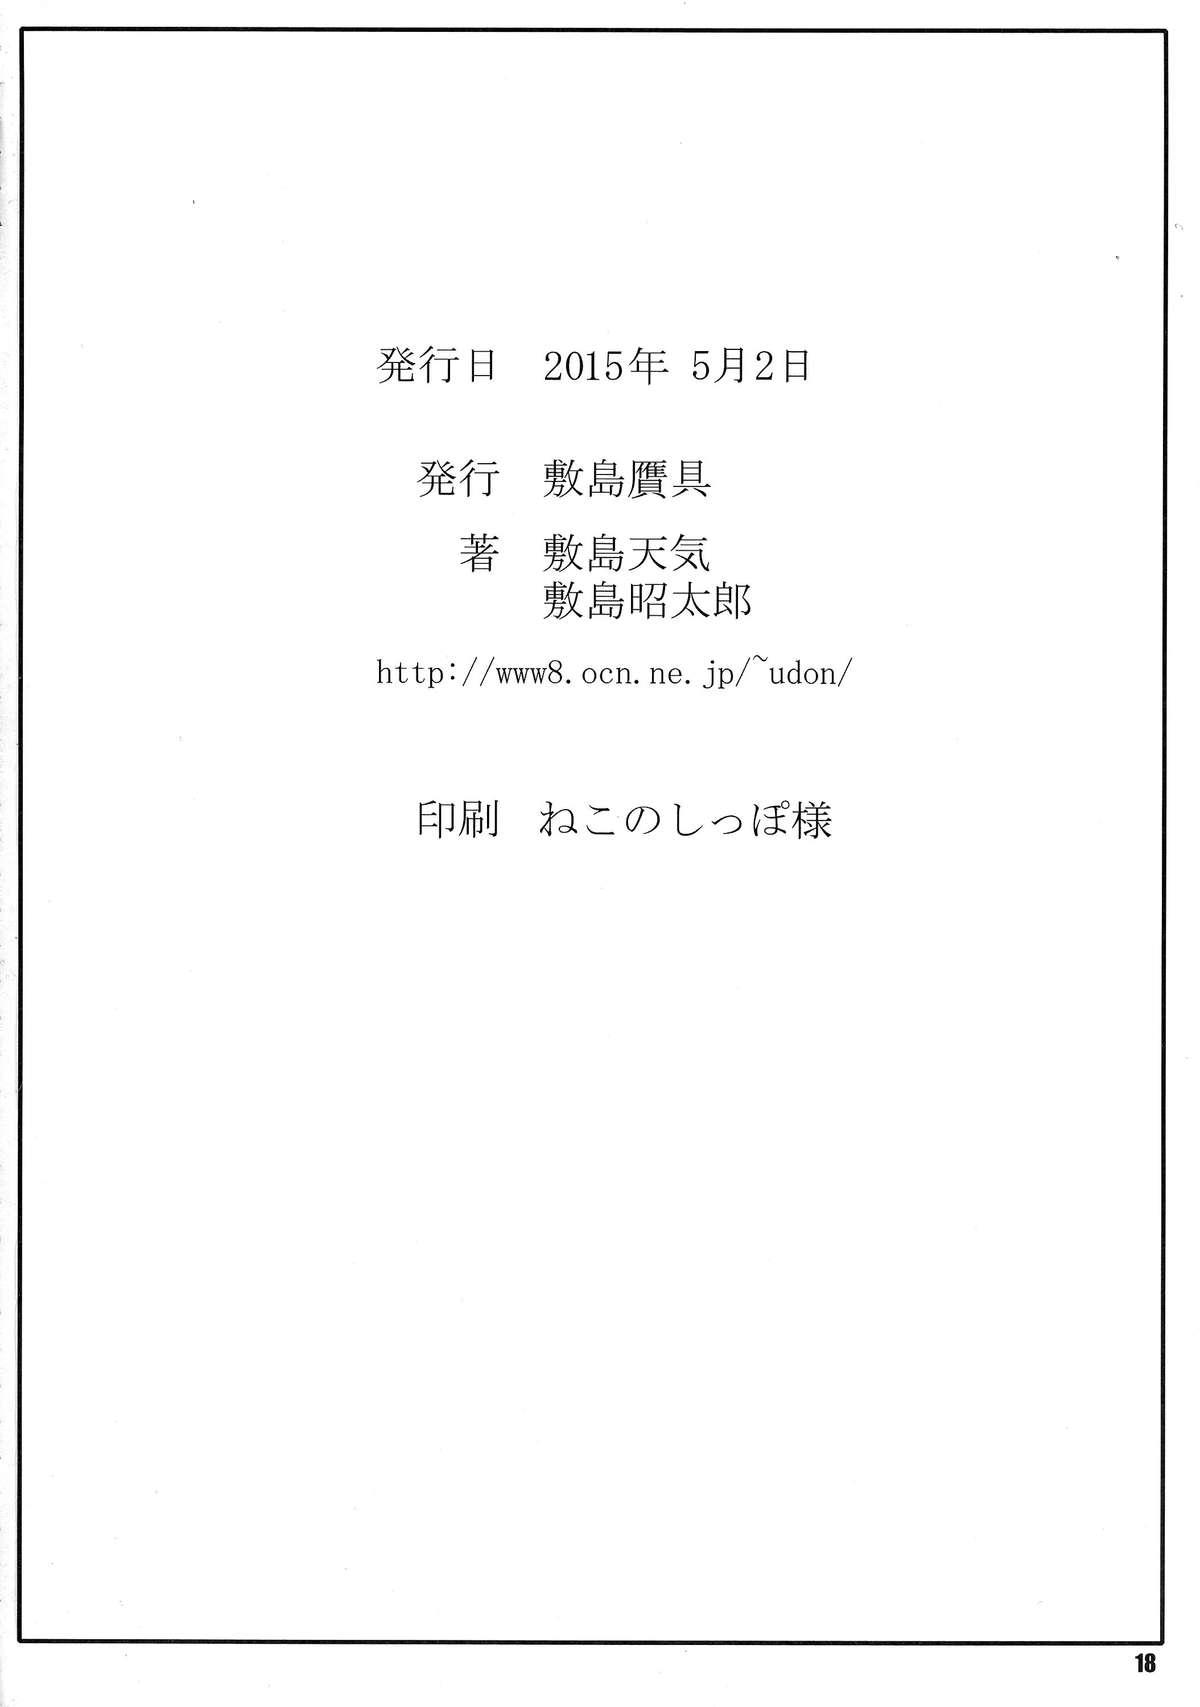 Morena Himegoto Techou III - Kyoukai senjou no horizon Twerking - Page 18